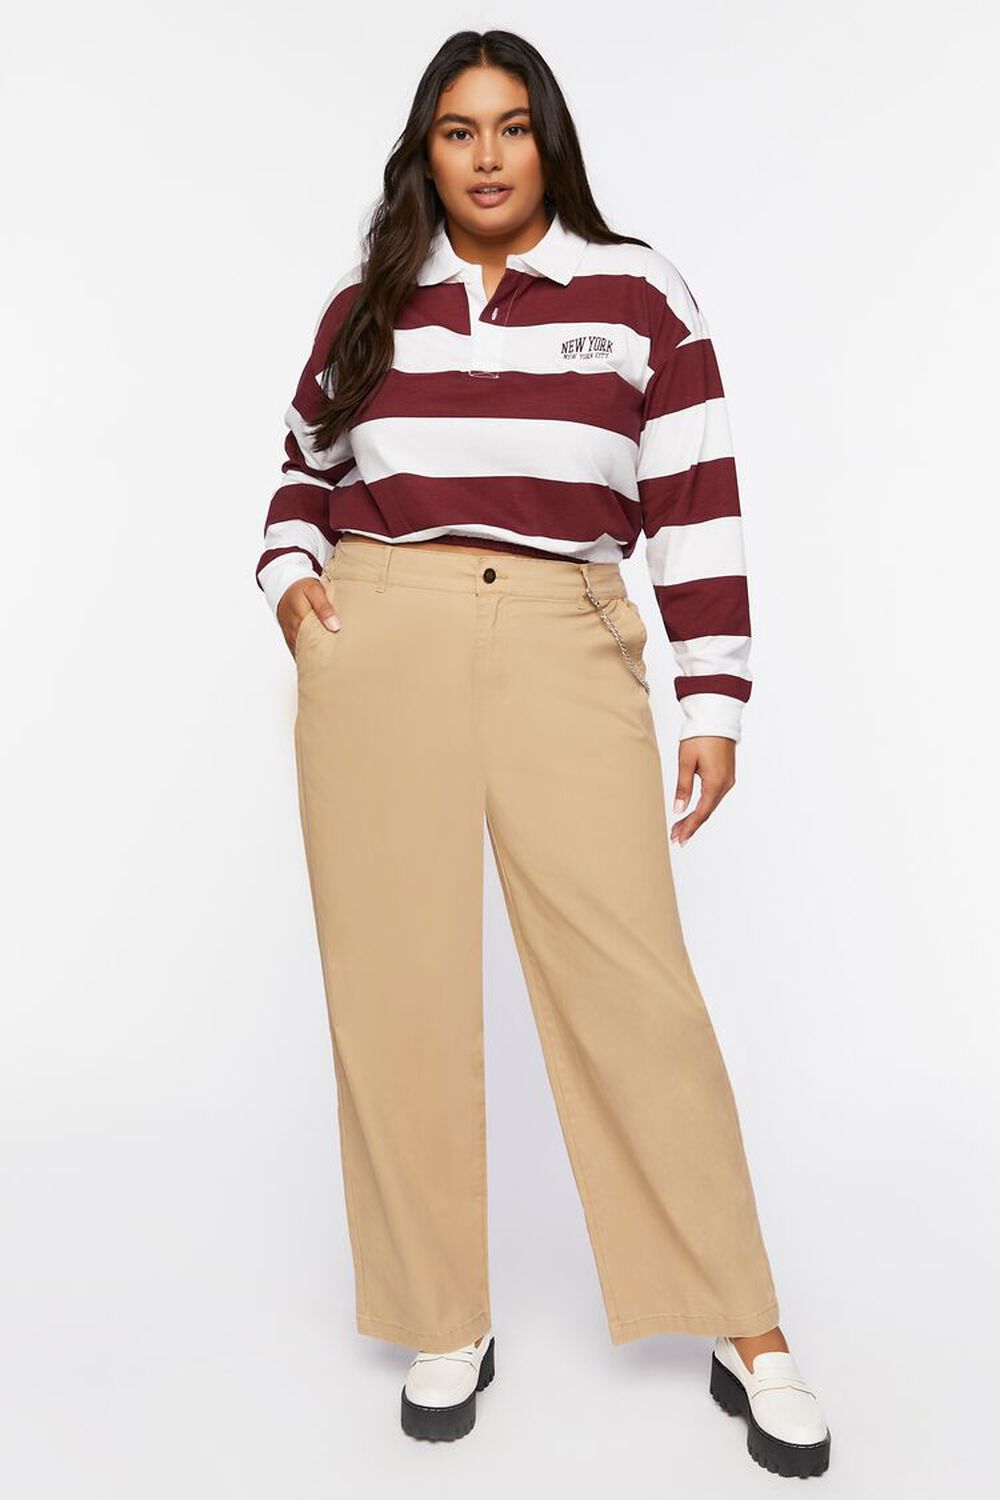 PINE BARK Plus Size Cotton-Blend Pants, image 1